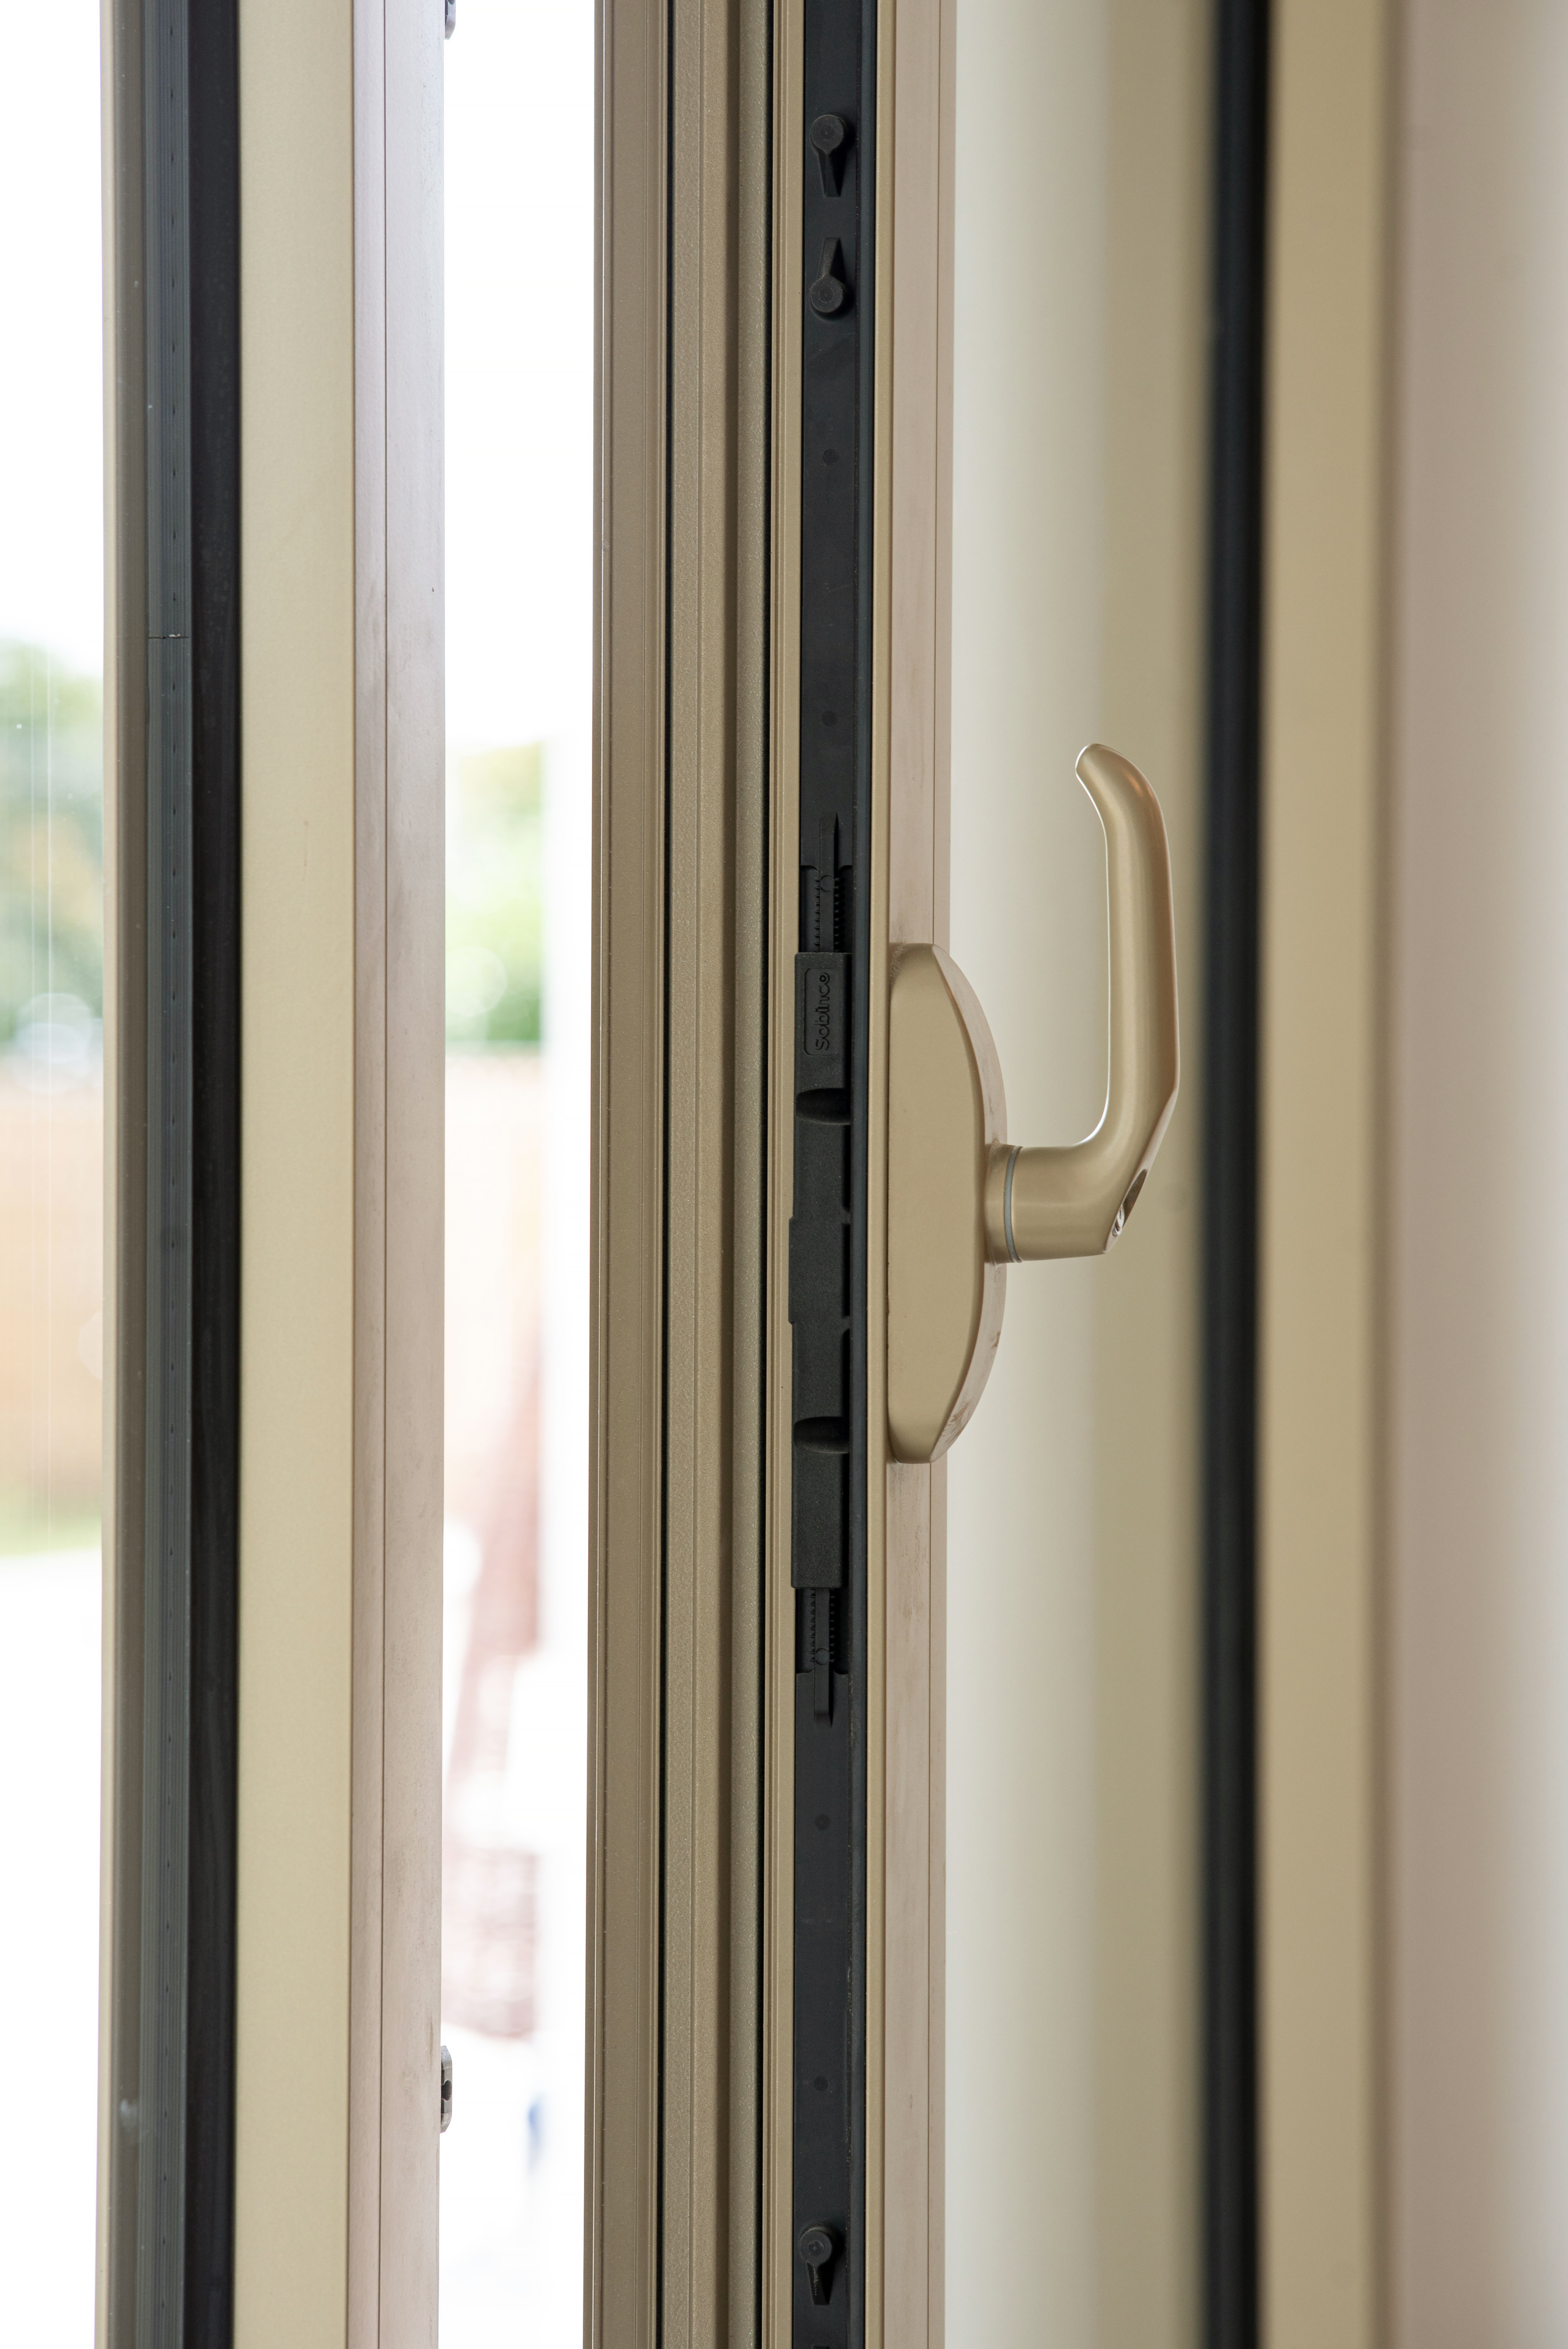 Von der Standardsicherheit bis zum zusätzlichen Einbruchschutz für Fenster und Türen.